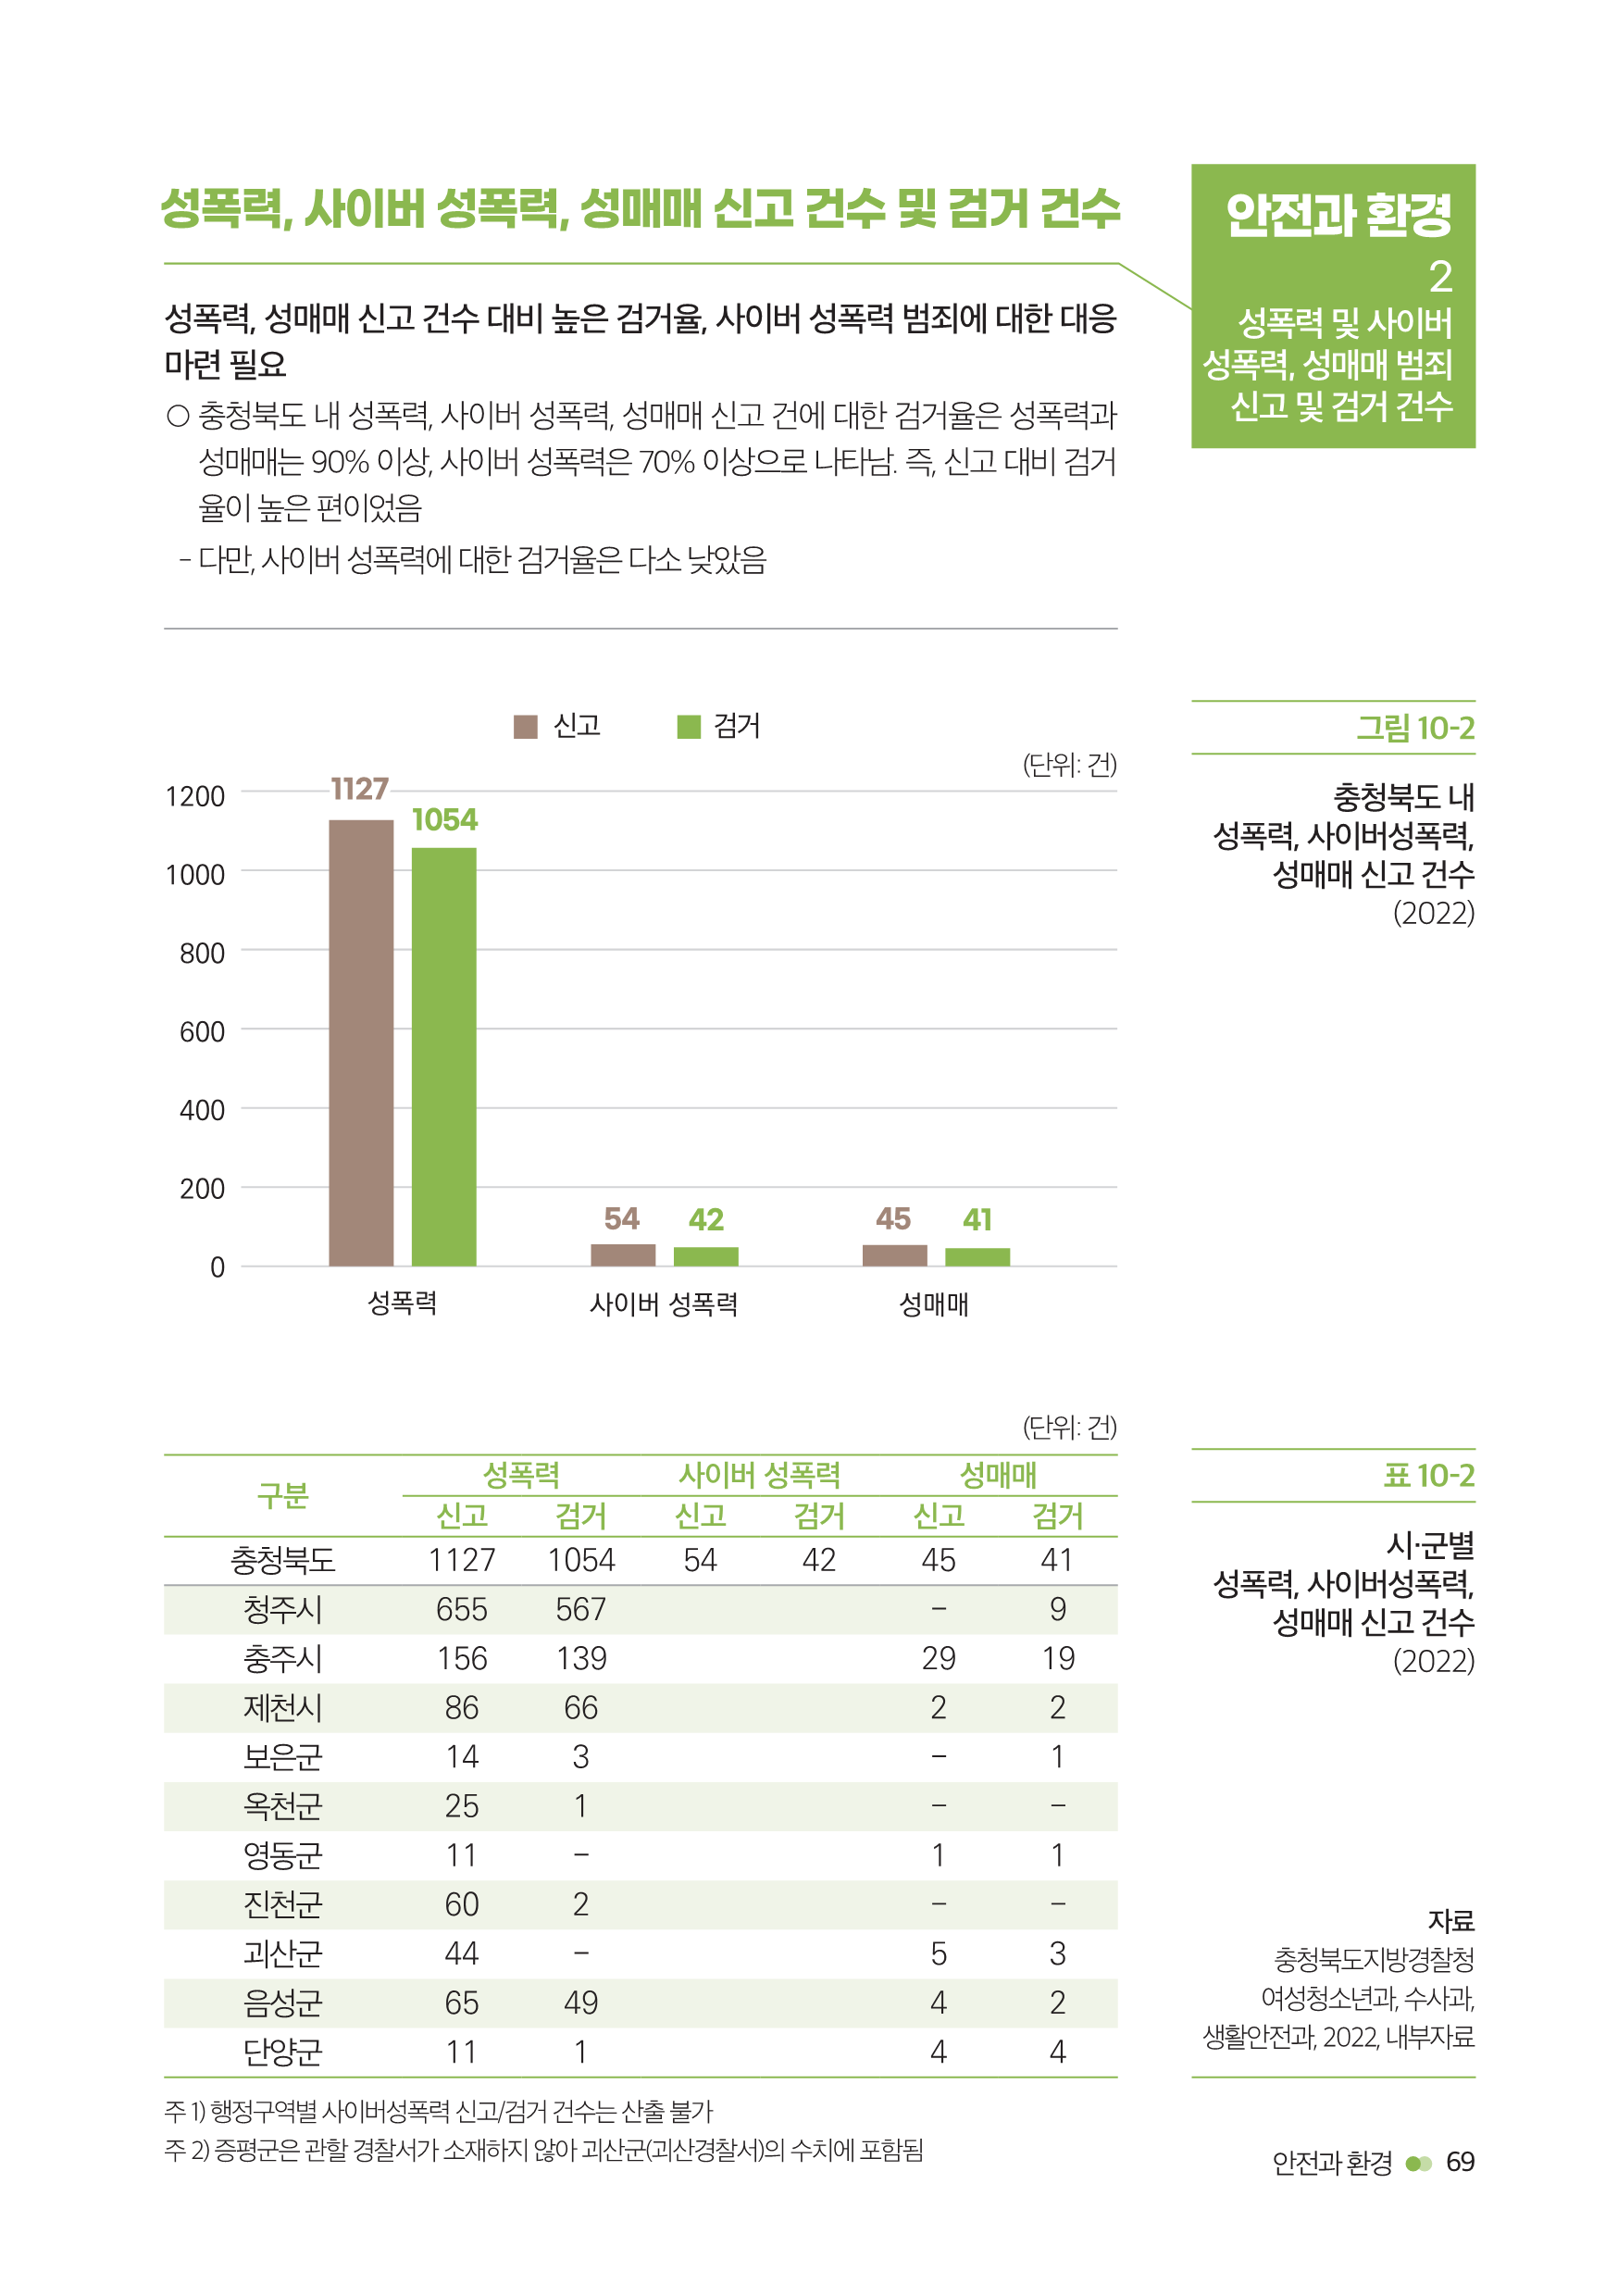 충북여성재단-성인지통계(인포)_웹용_71.png